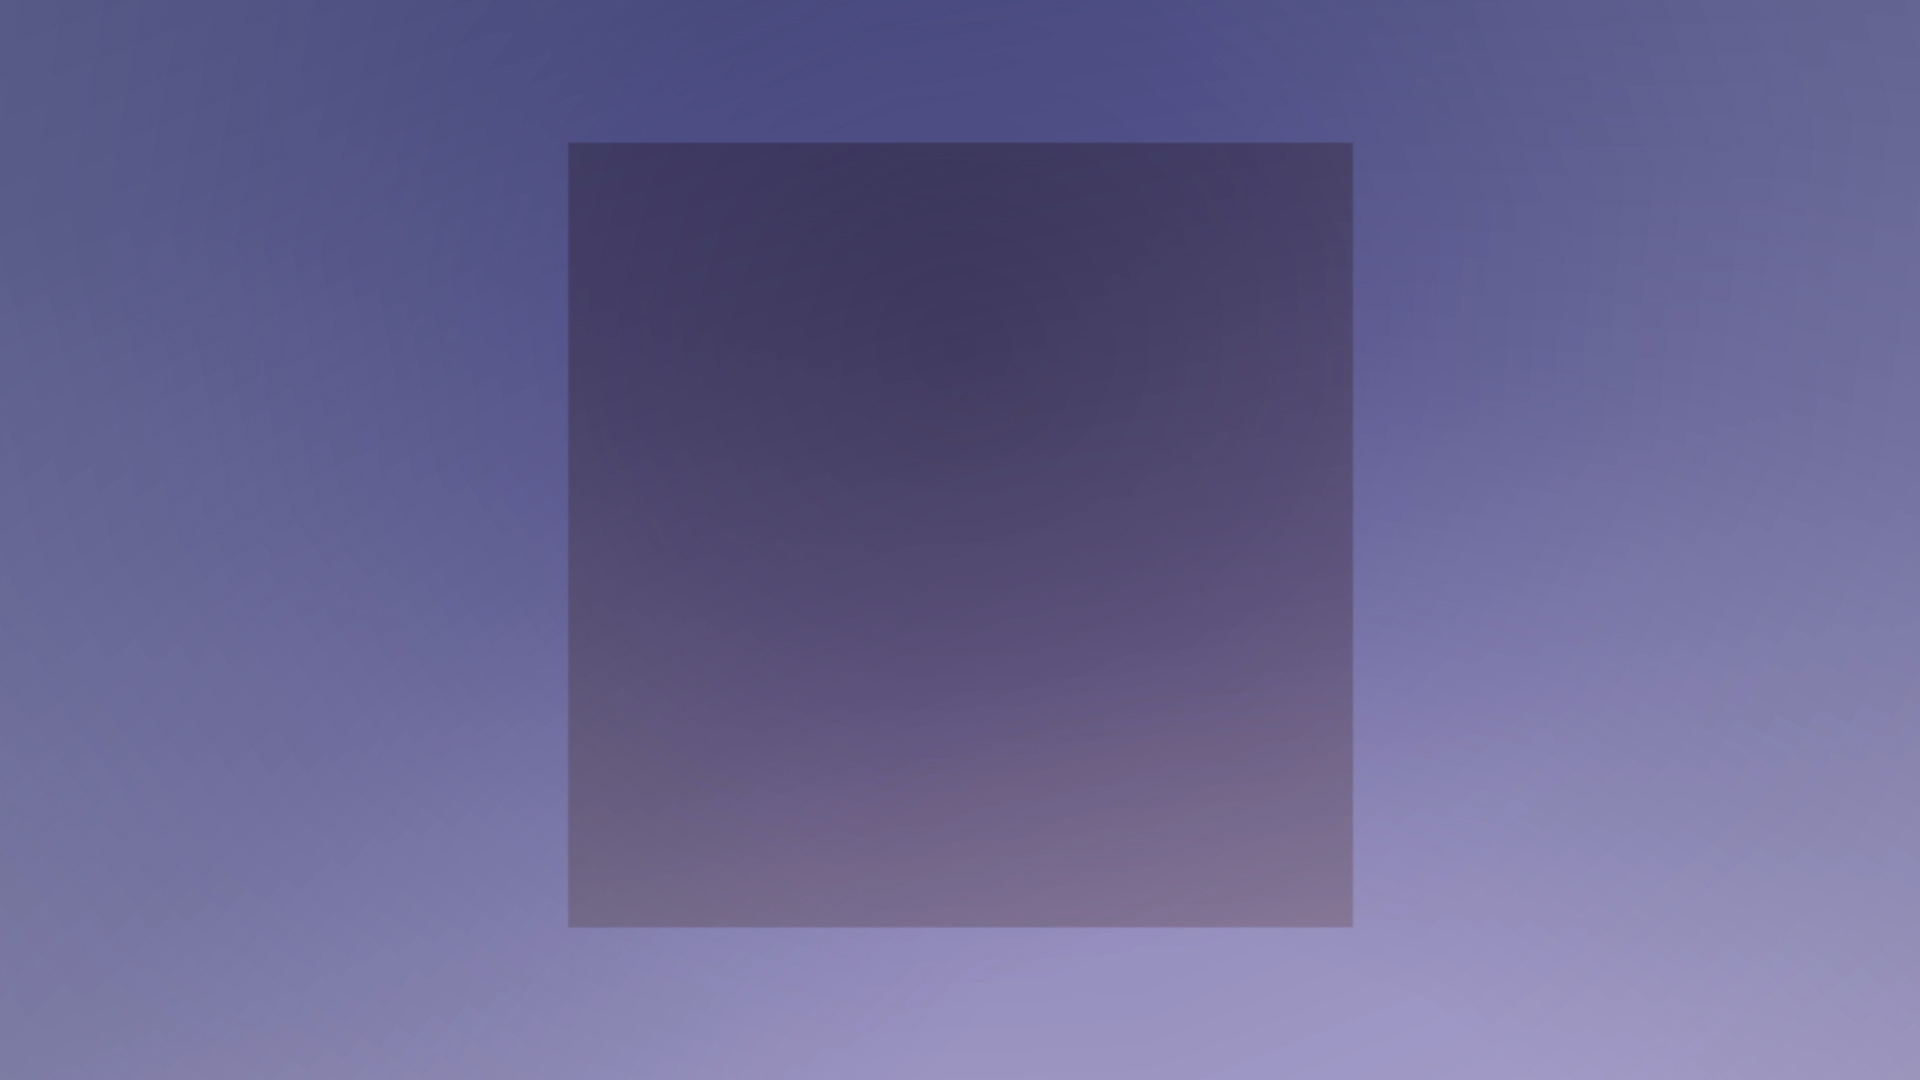 a slightly darker-sky square sits on a slightly-lighter purple background.